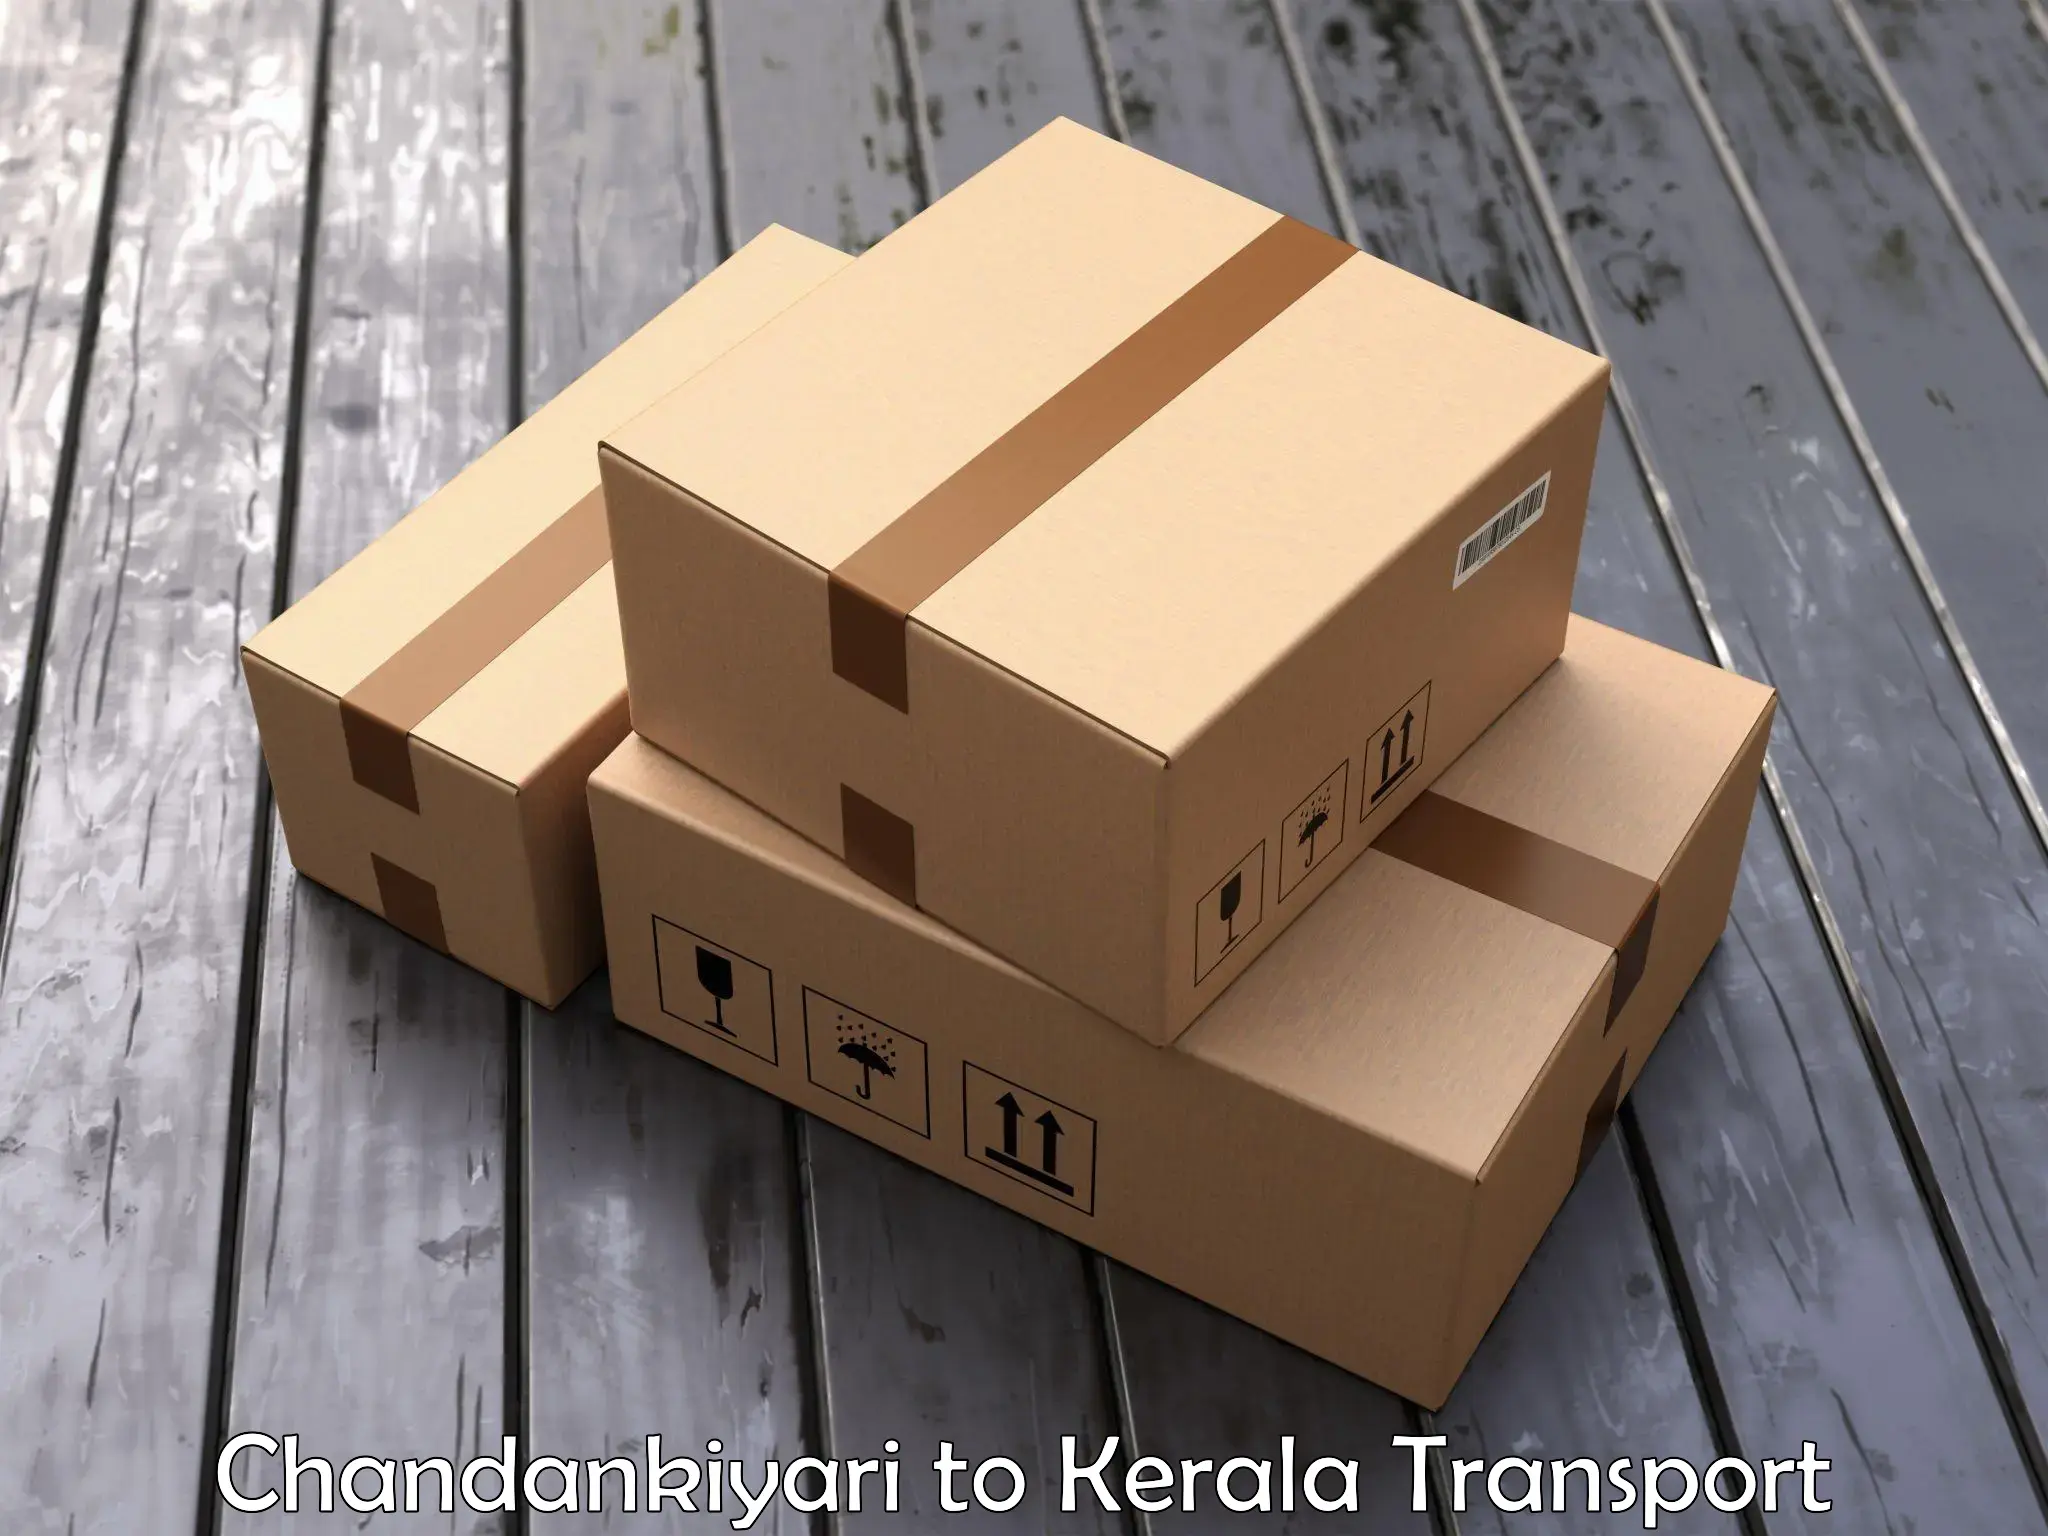 Online transport service Chandankiyari to Ernakulam